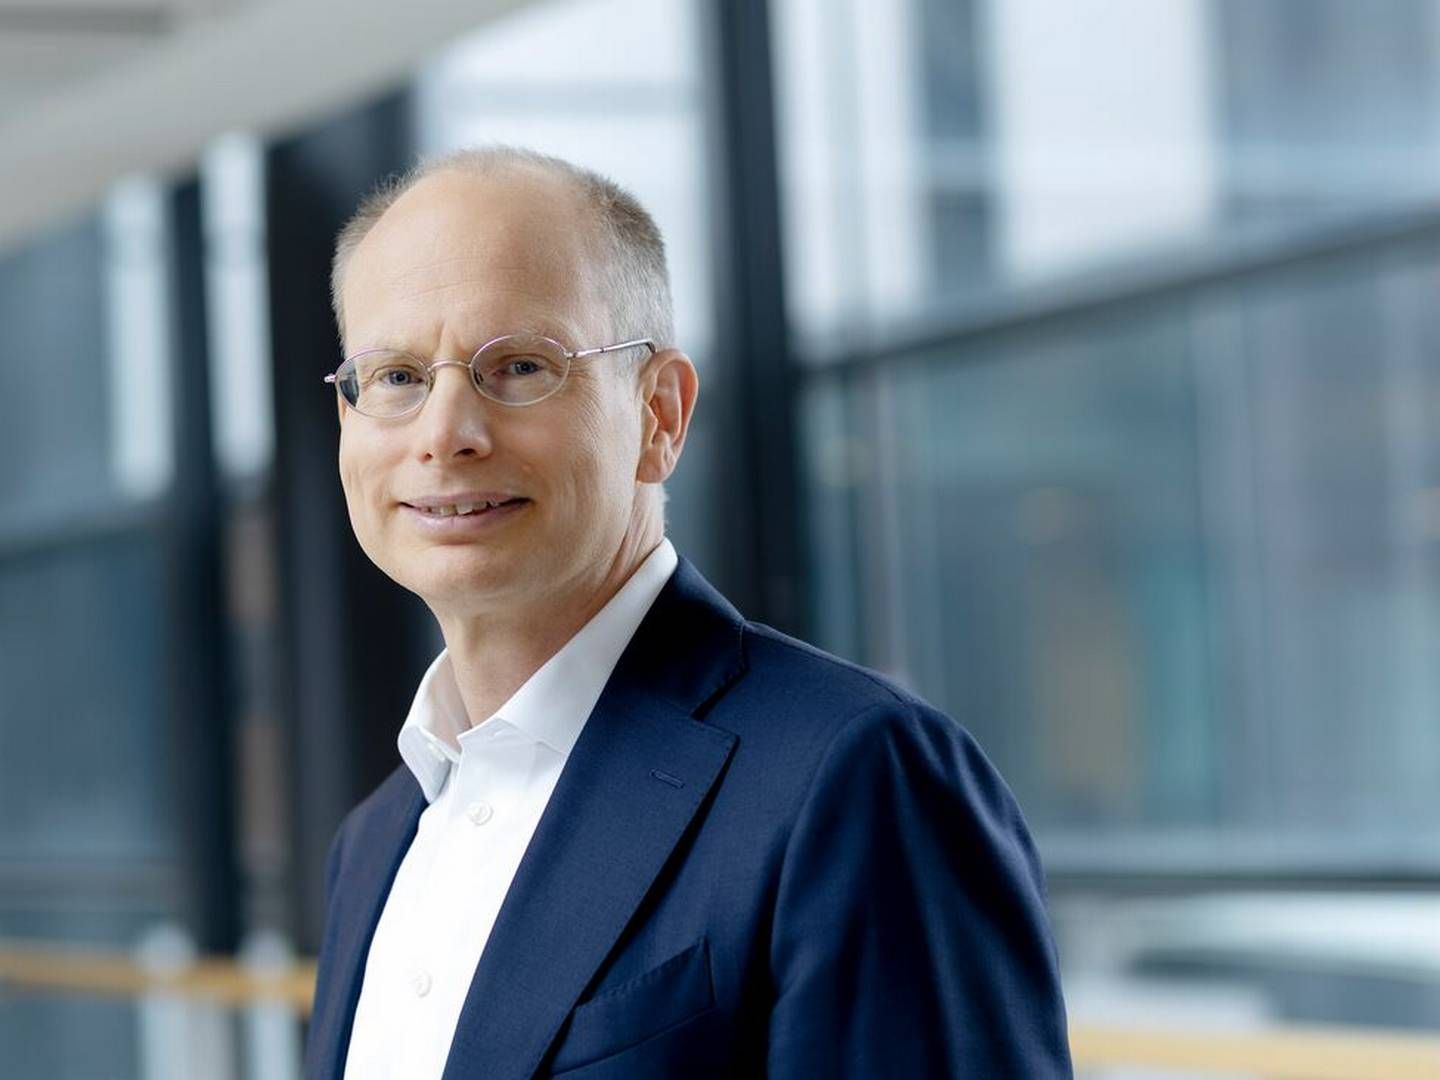 Håkan Agnevall er adm. direktør for den finske teknologileverandør Wärtsilä. | Foto: Wärtsilä Corporation